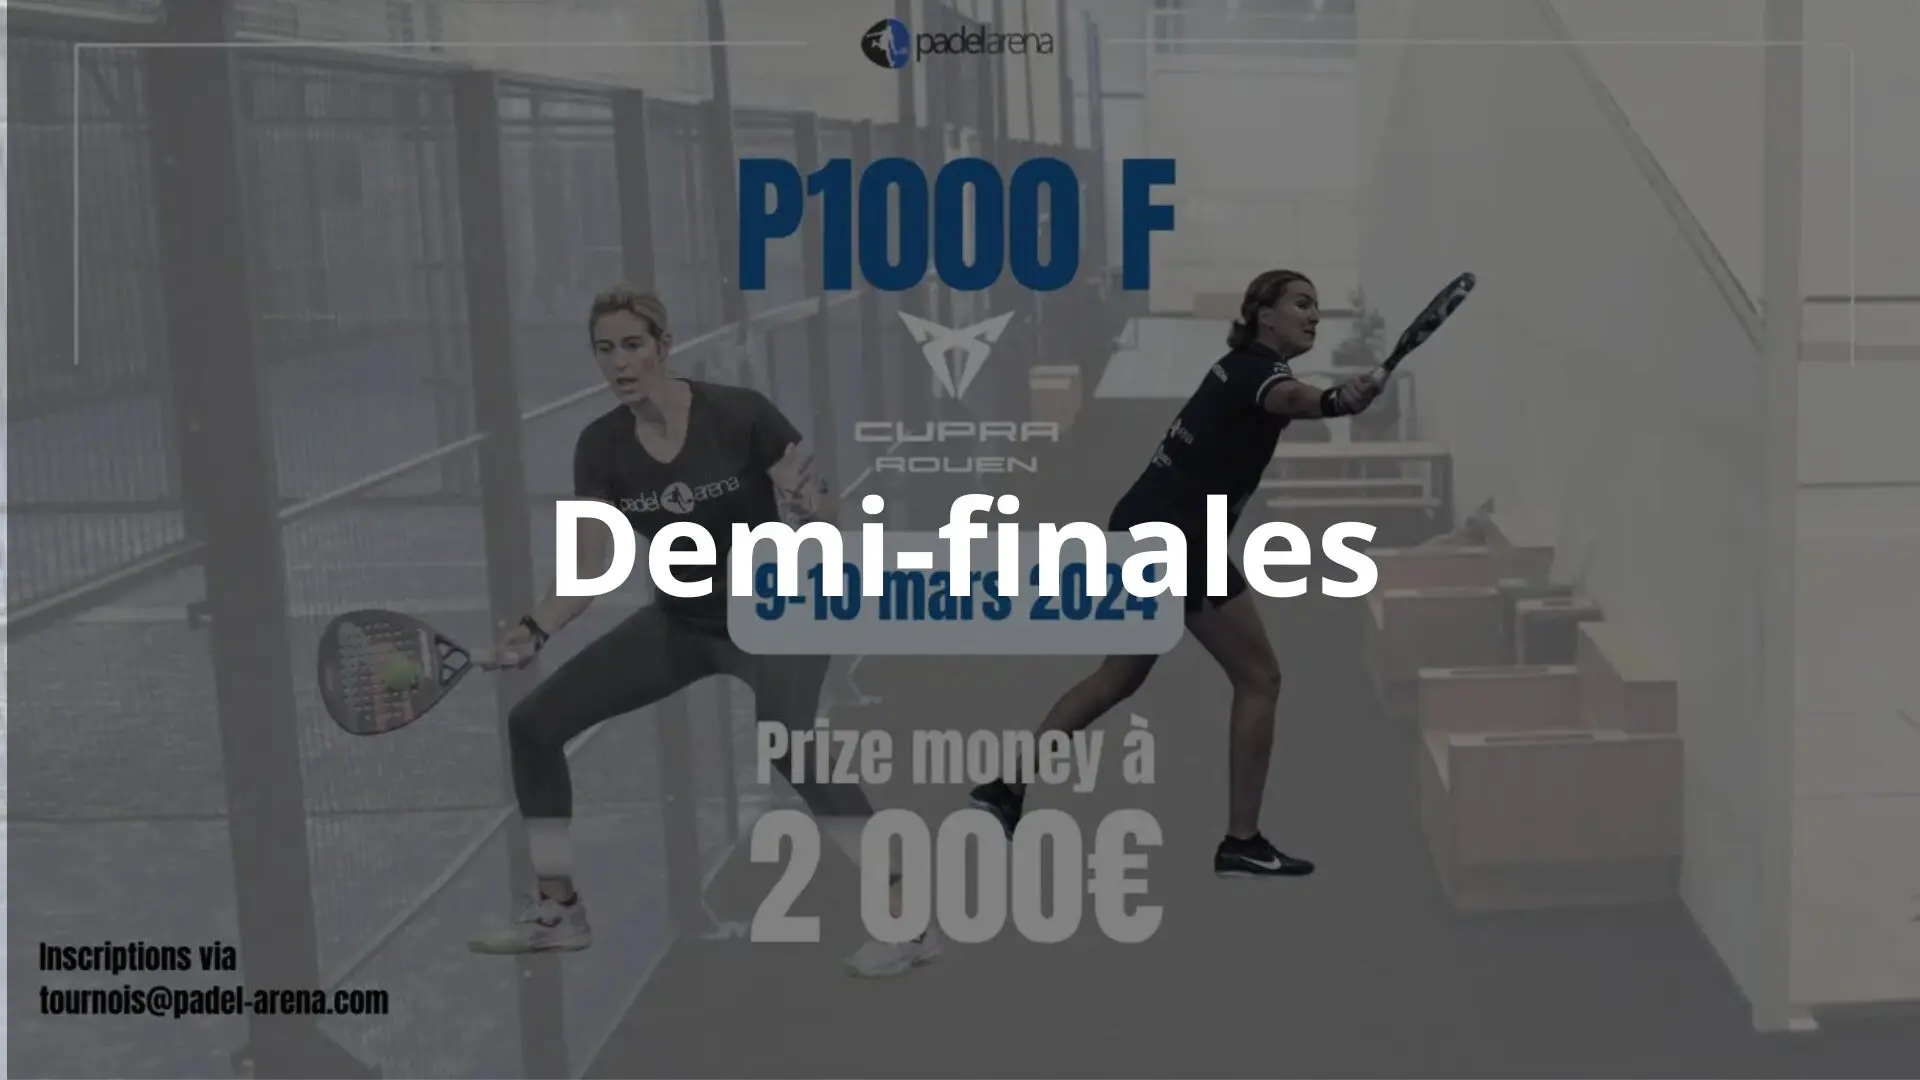 P1000 Padel Arena Cupra Rouen – ¡Inicio de las semifinales en vivo!